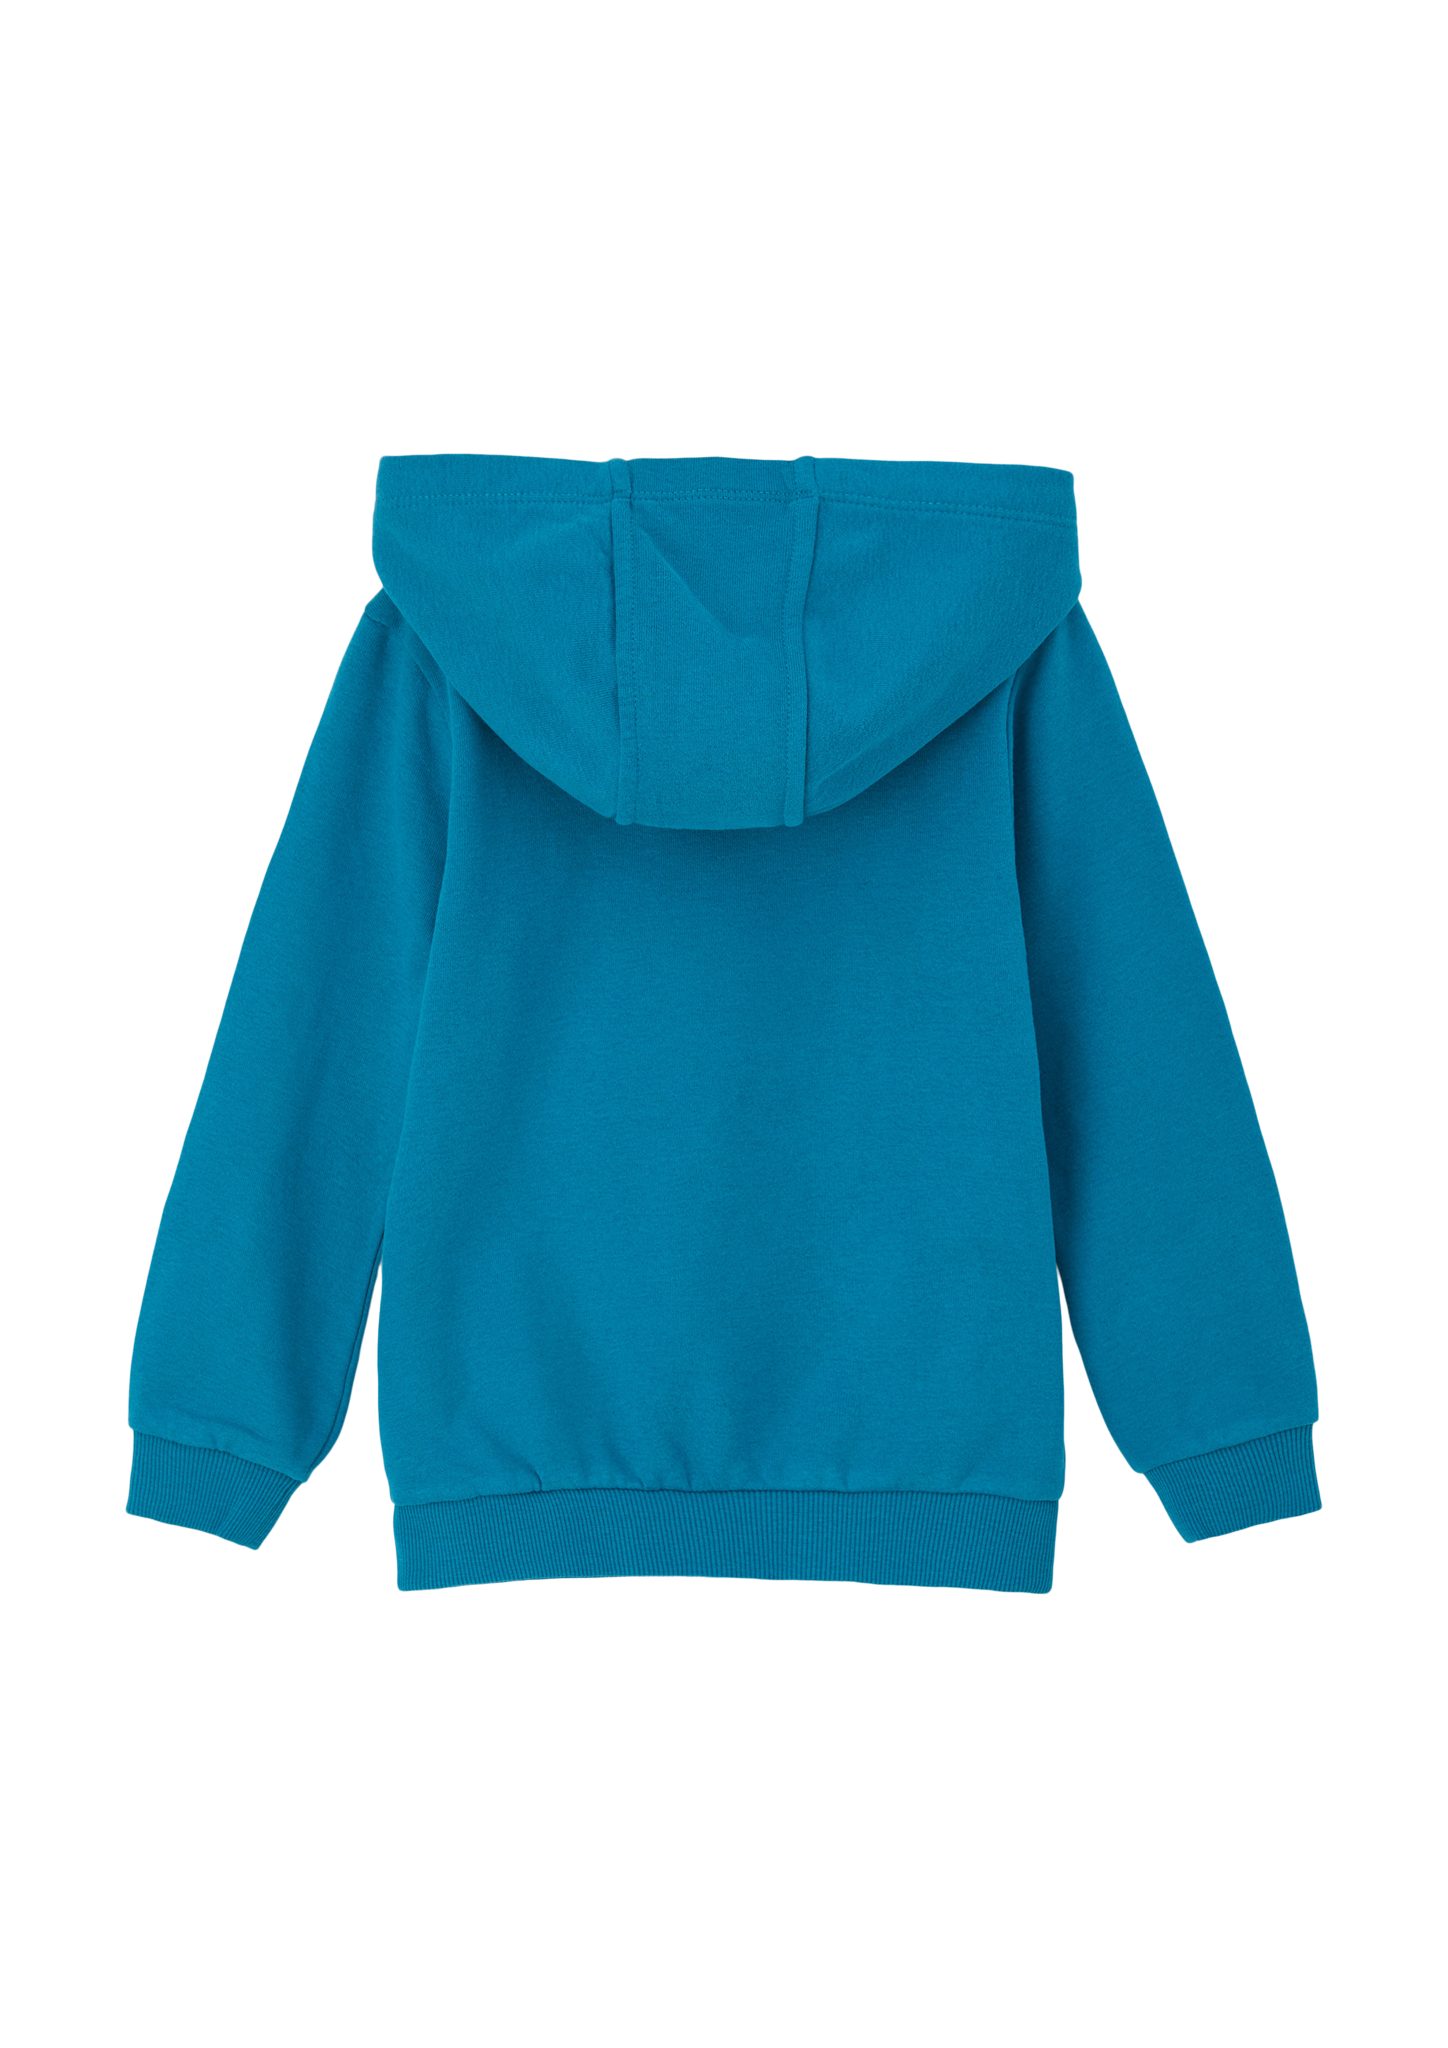 s.Oliver Sweatshirt Kapuzensweater mit Innenseite weicher azurblau